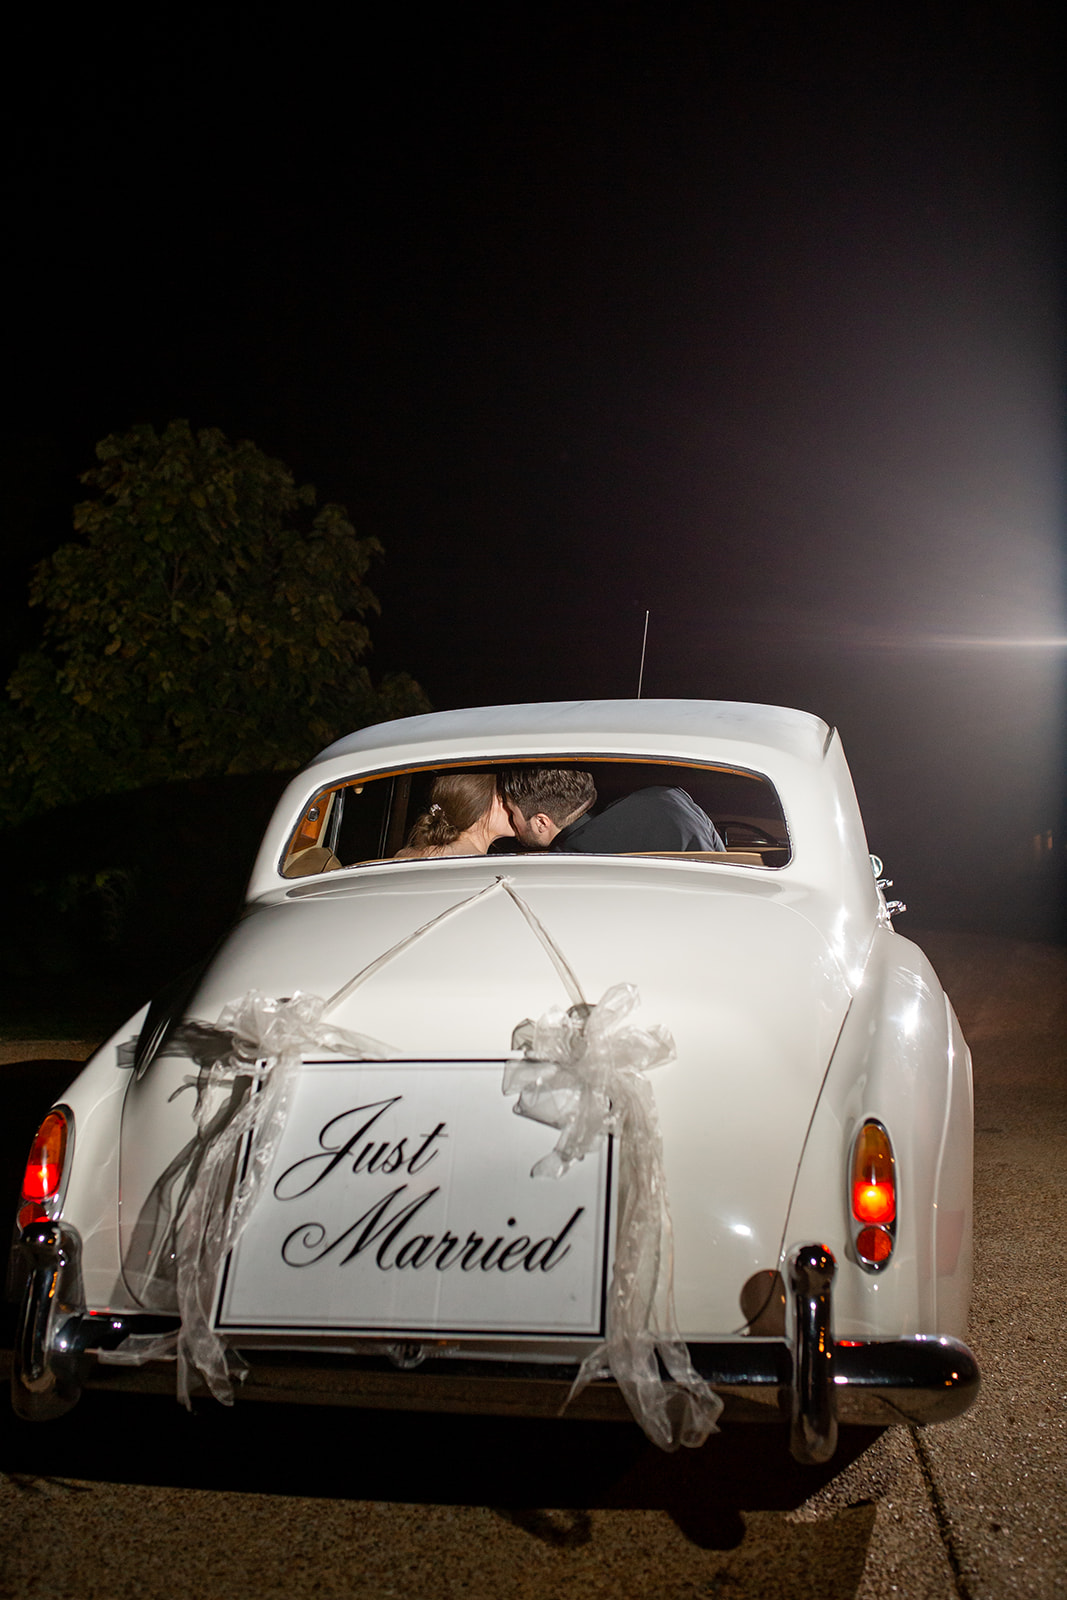 Just Married Vintage wedding car